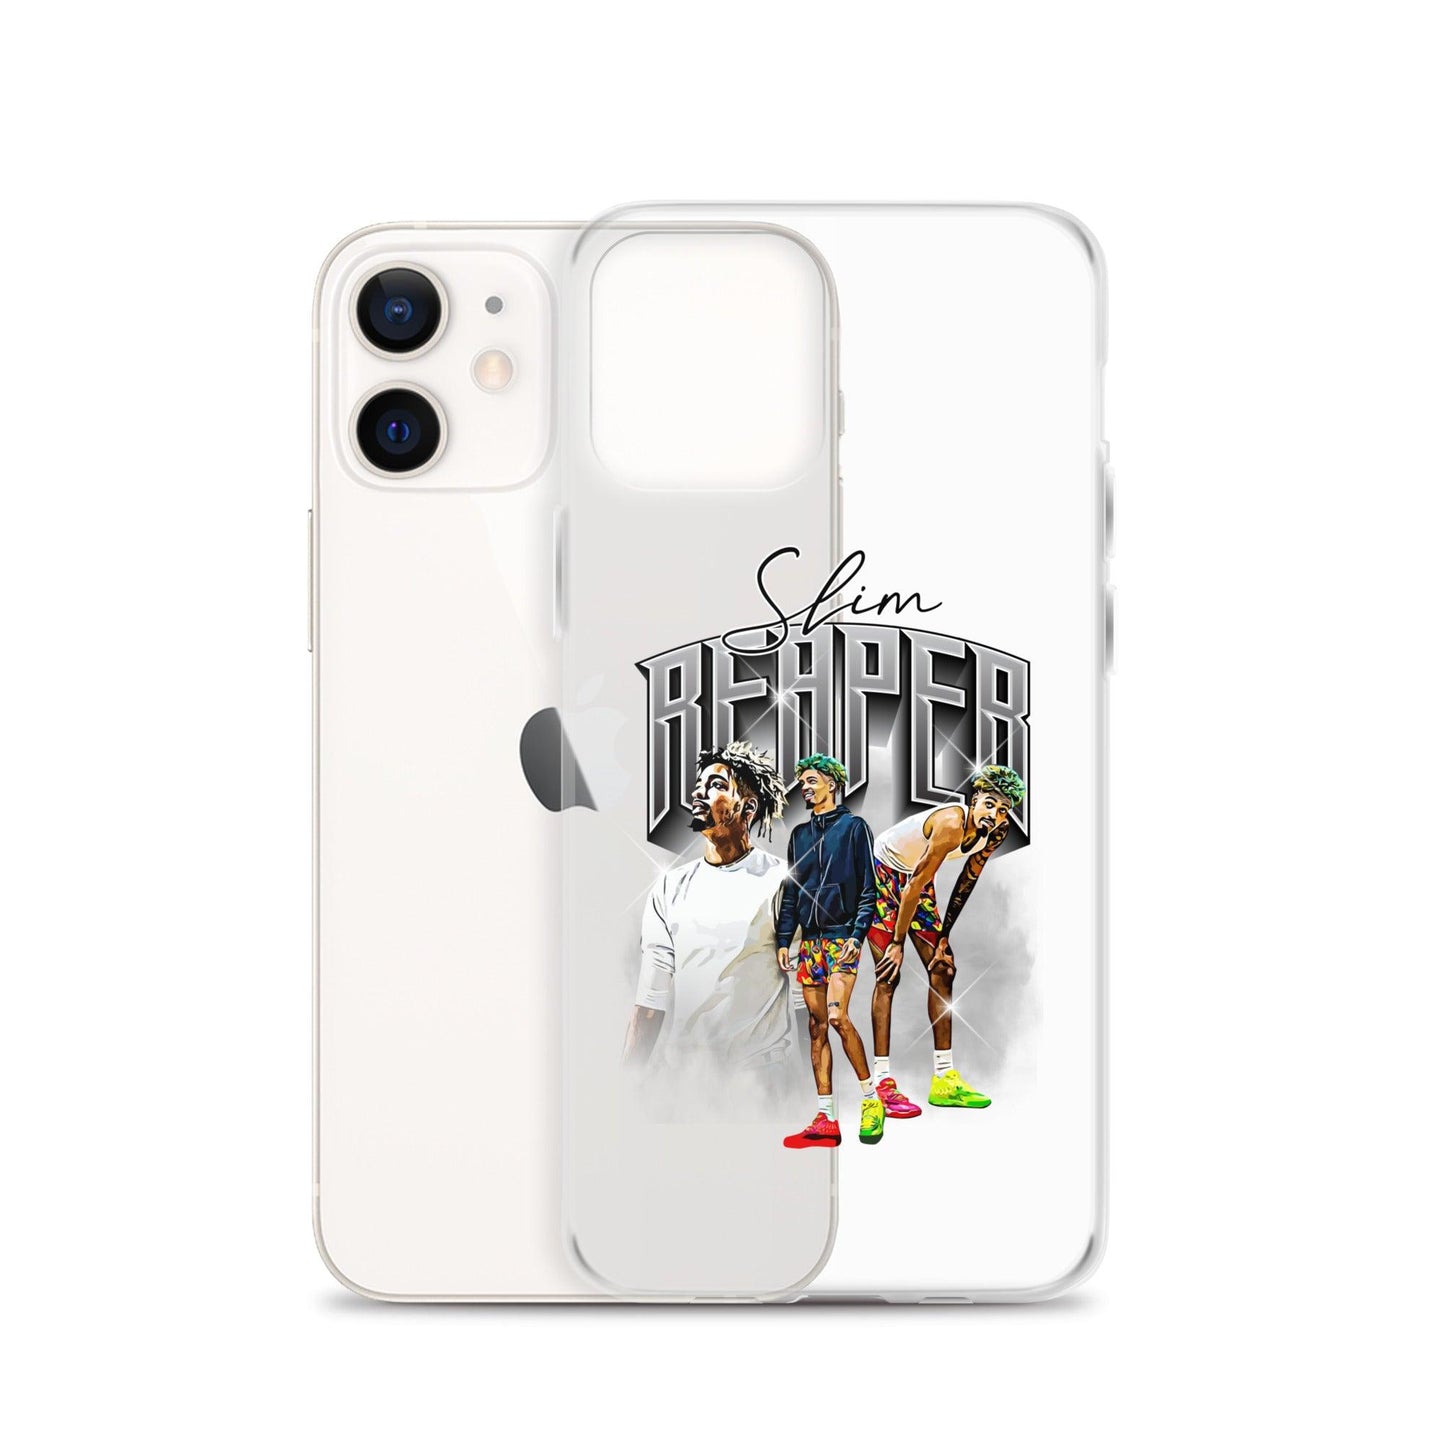 Slim Reaper “Heritage” iPhone Case - Fan Arch